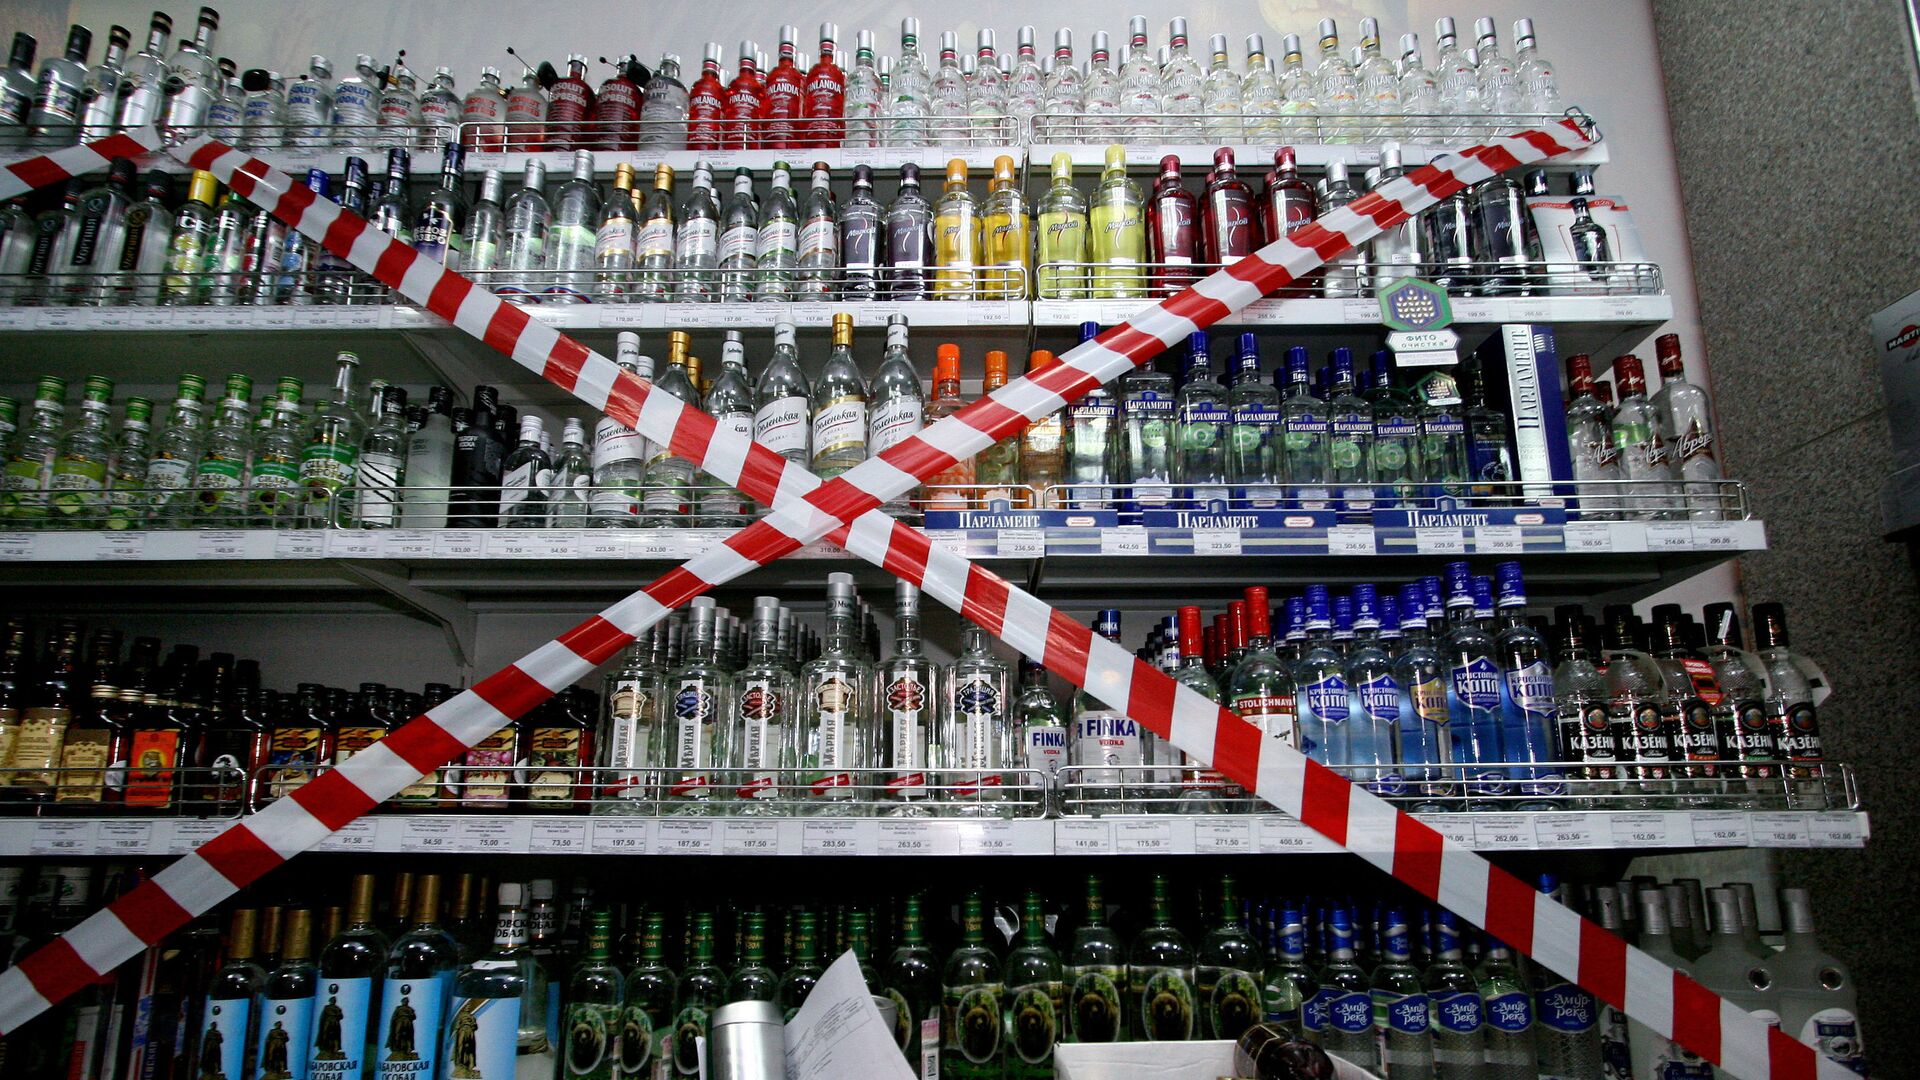 Где Купить Алкоголь В Новосибирске